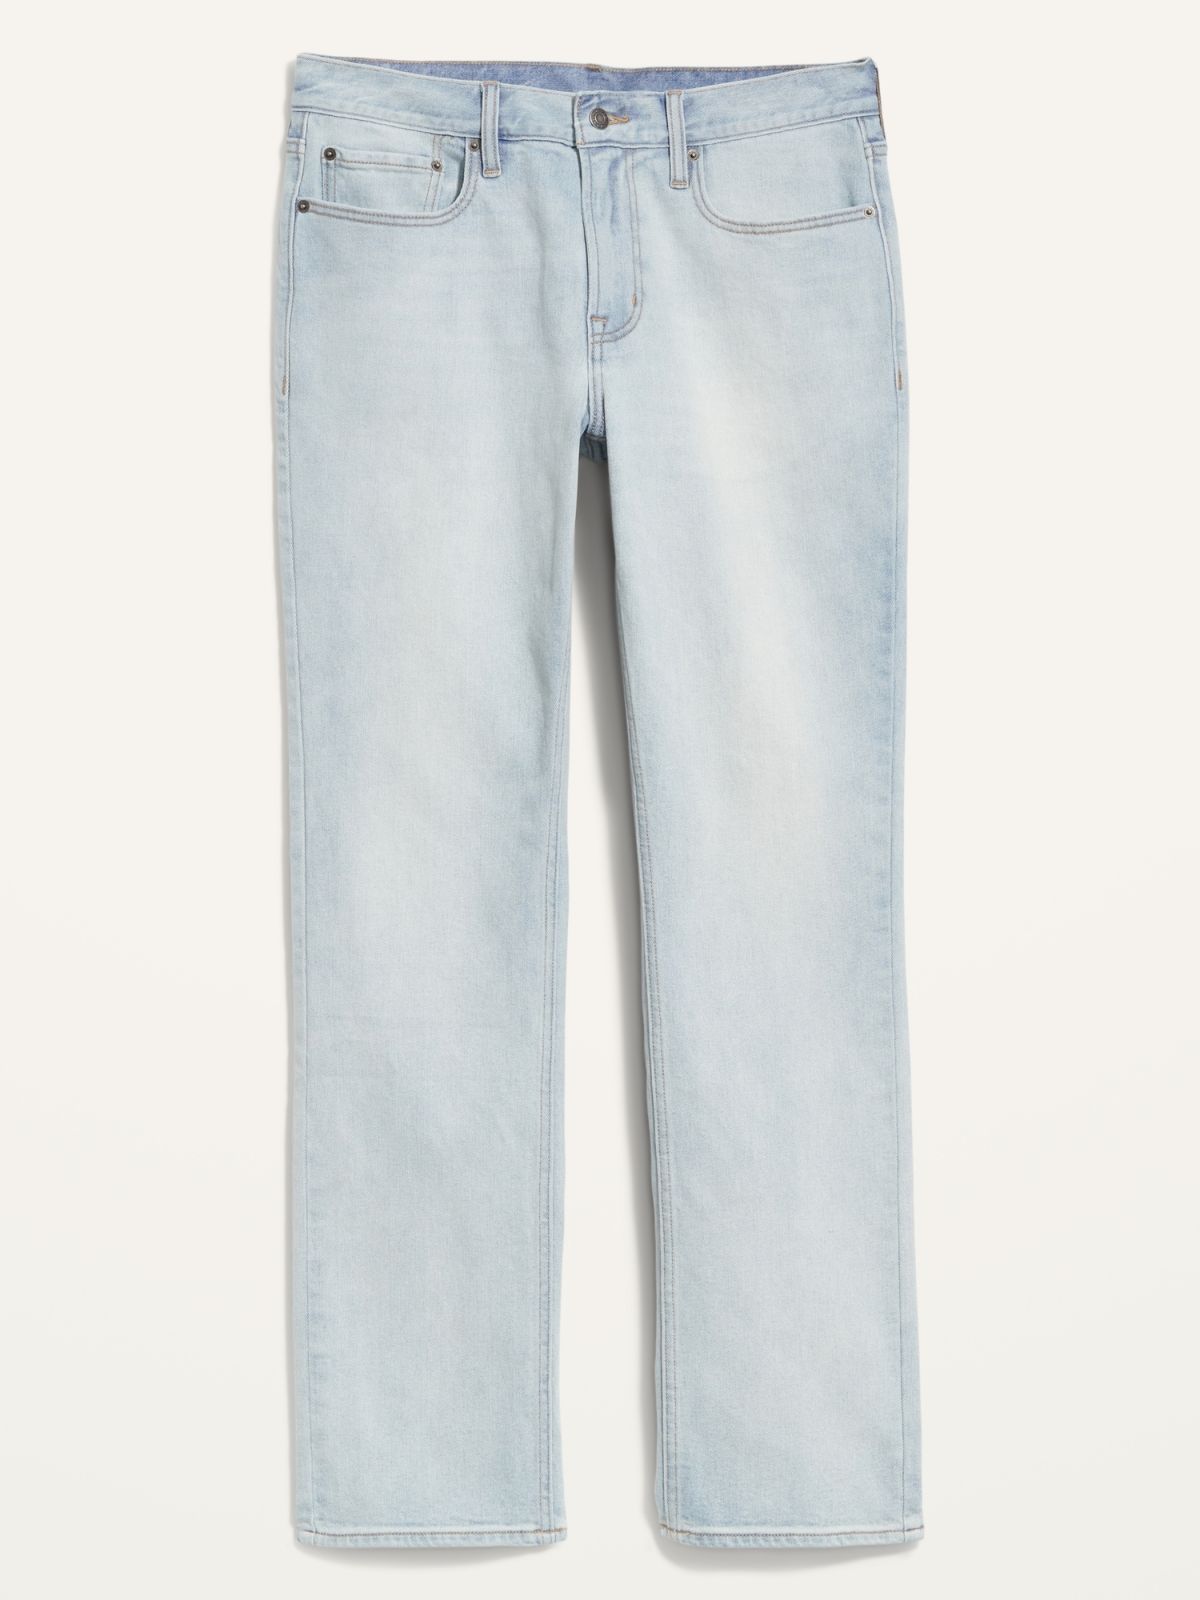  ג'ינס ארוך / גברים של OLD NAVY